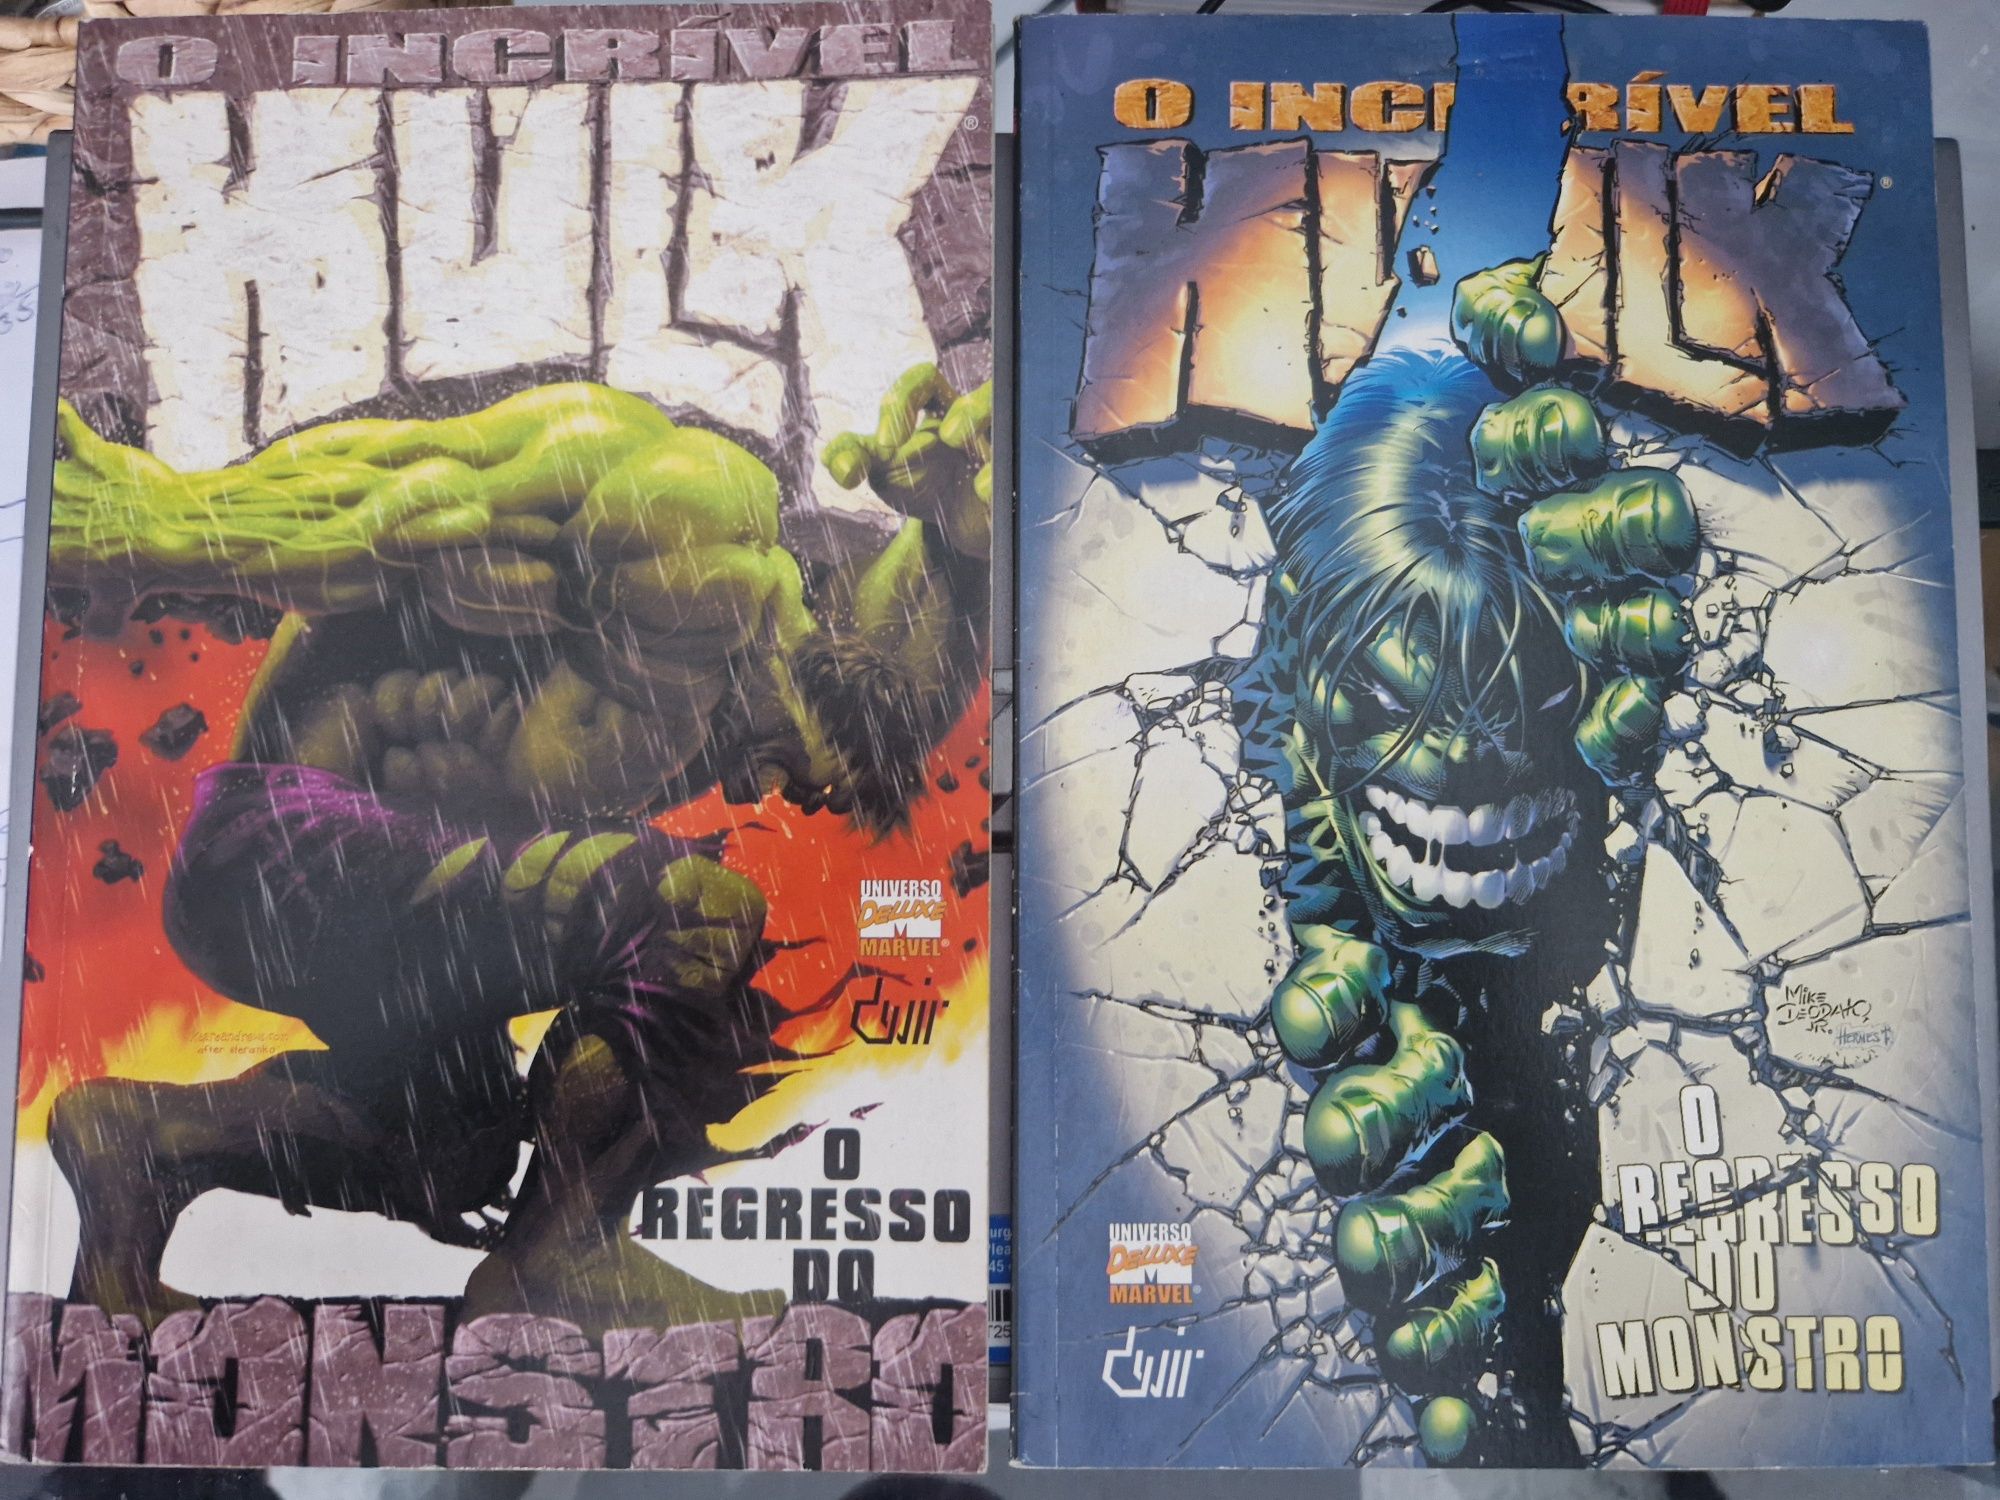 Hulk O regresso do monstro vol.1 e 2